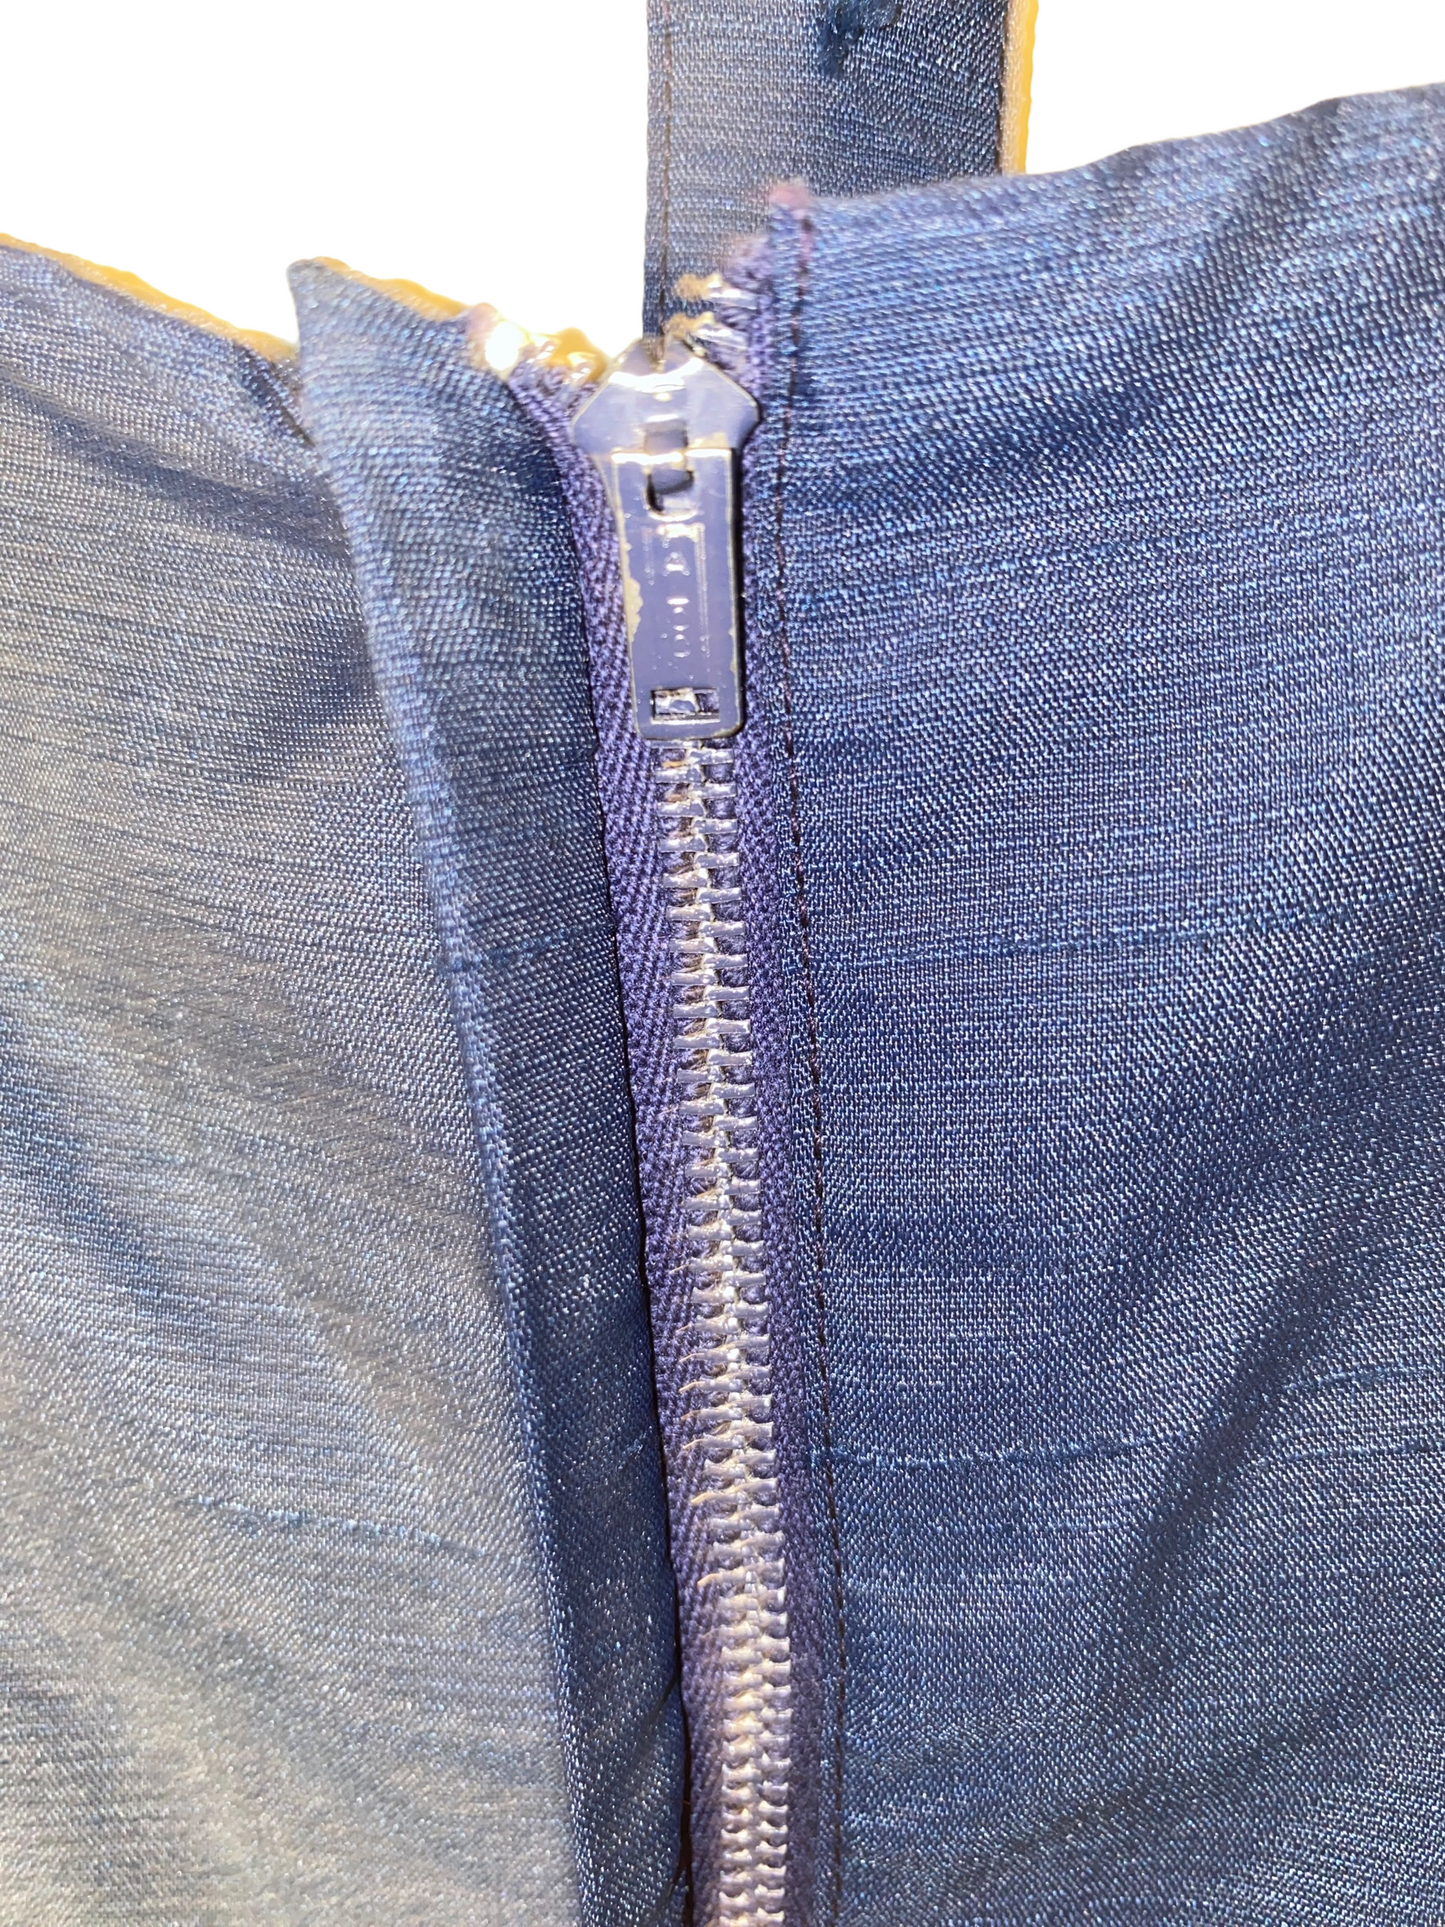 1950s Pleated Simple Dress w Belt (L)